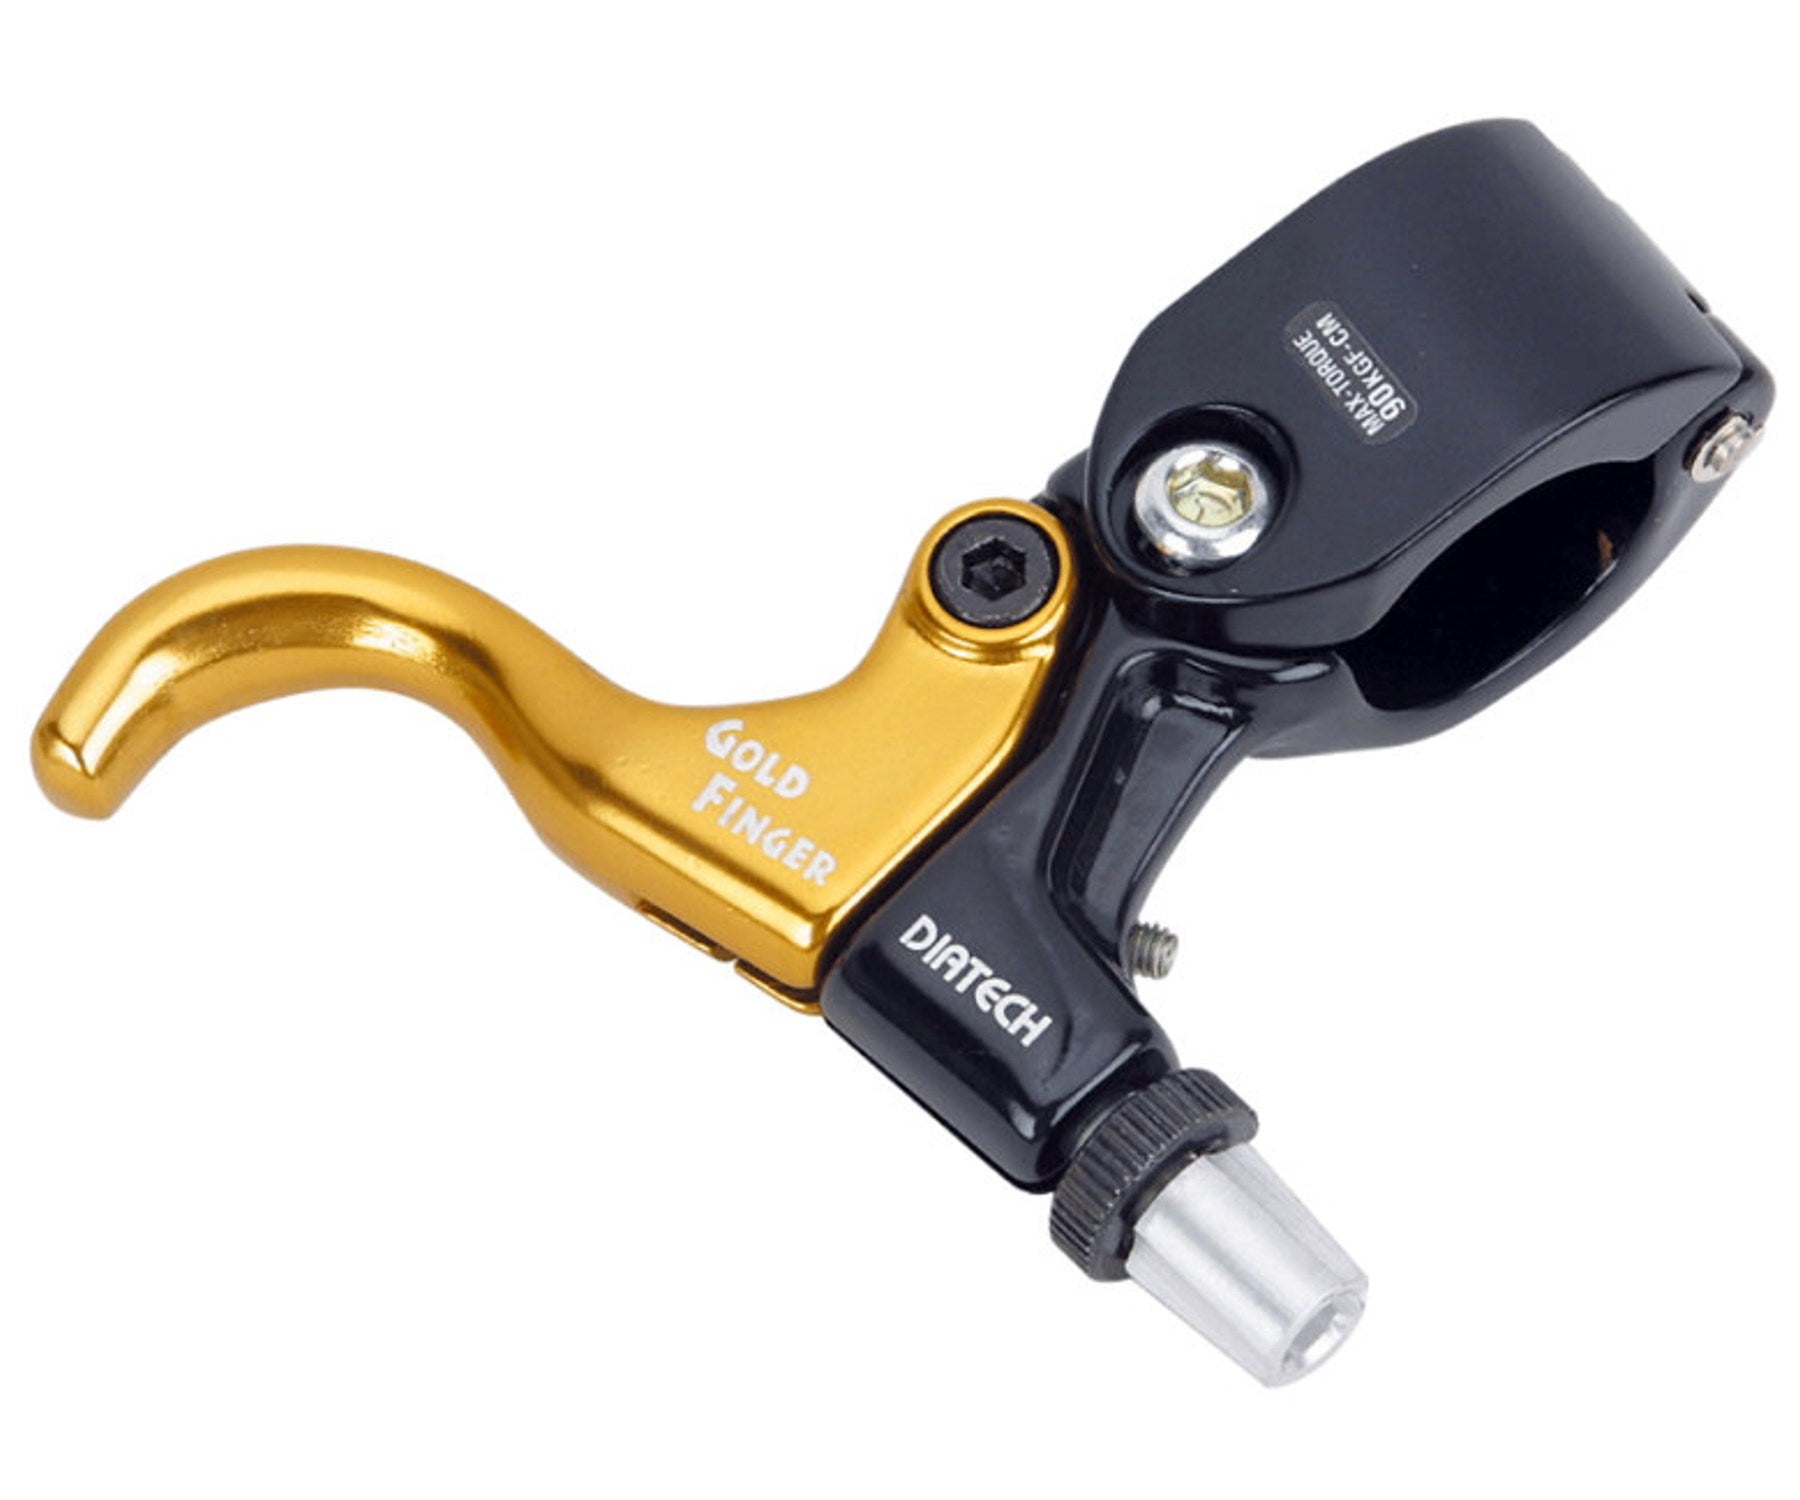 Dia-Compe Gold Finger brake lever - Retrogression Fixed Gear